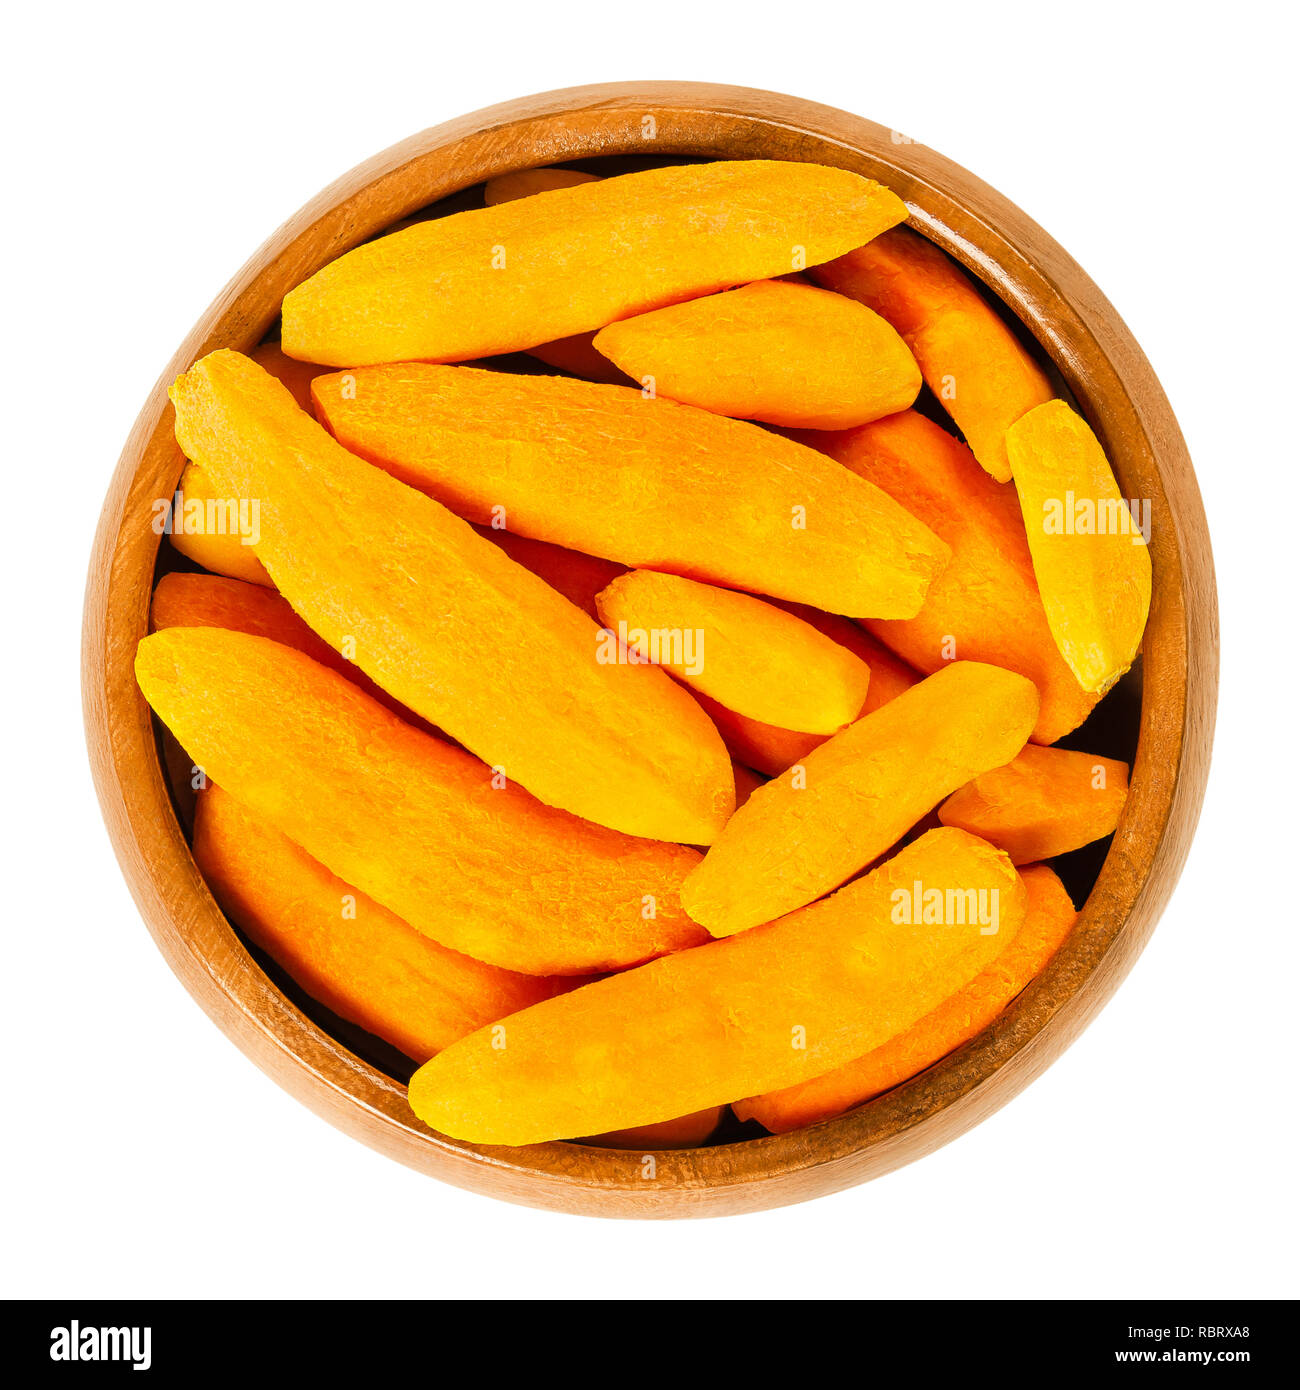 Geschälte Gelbwurz Rhizome in Houten. Frischen Wurzeln von Curcuma longa, Kurkuma, mit Orange. Spice für Currys, Färbung Senf und Medizin. Stockfoto